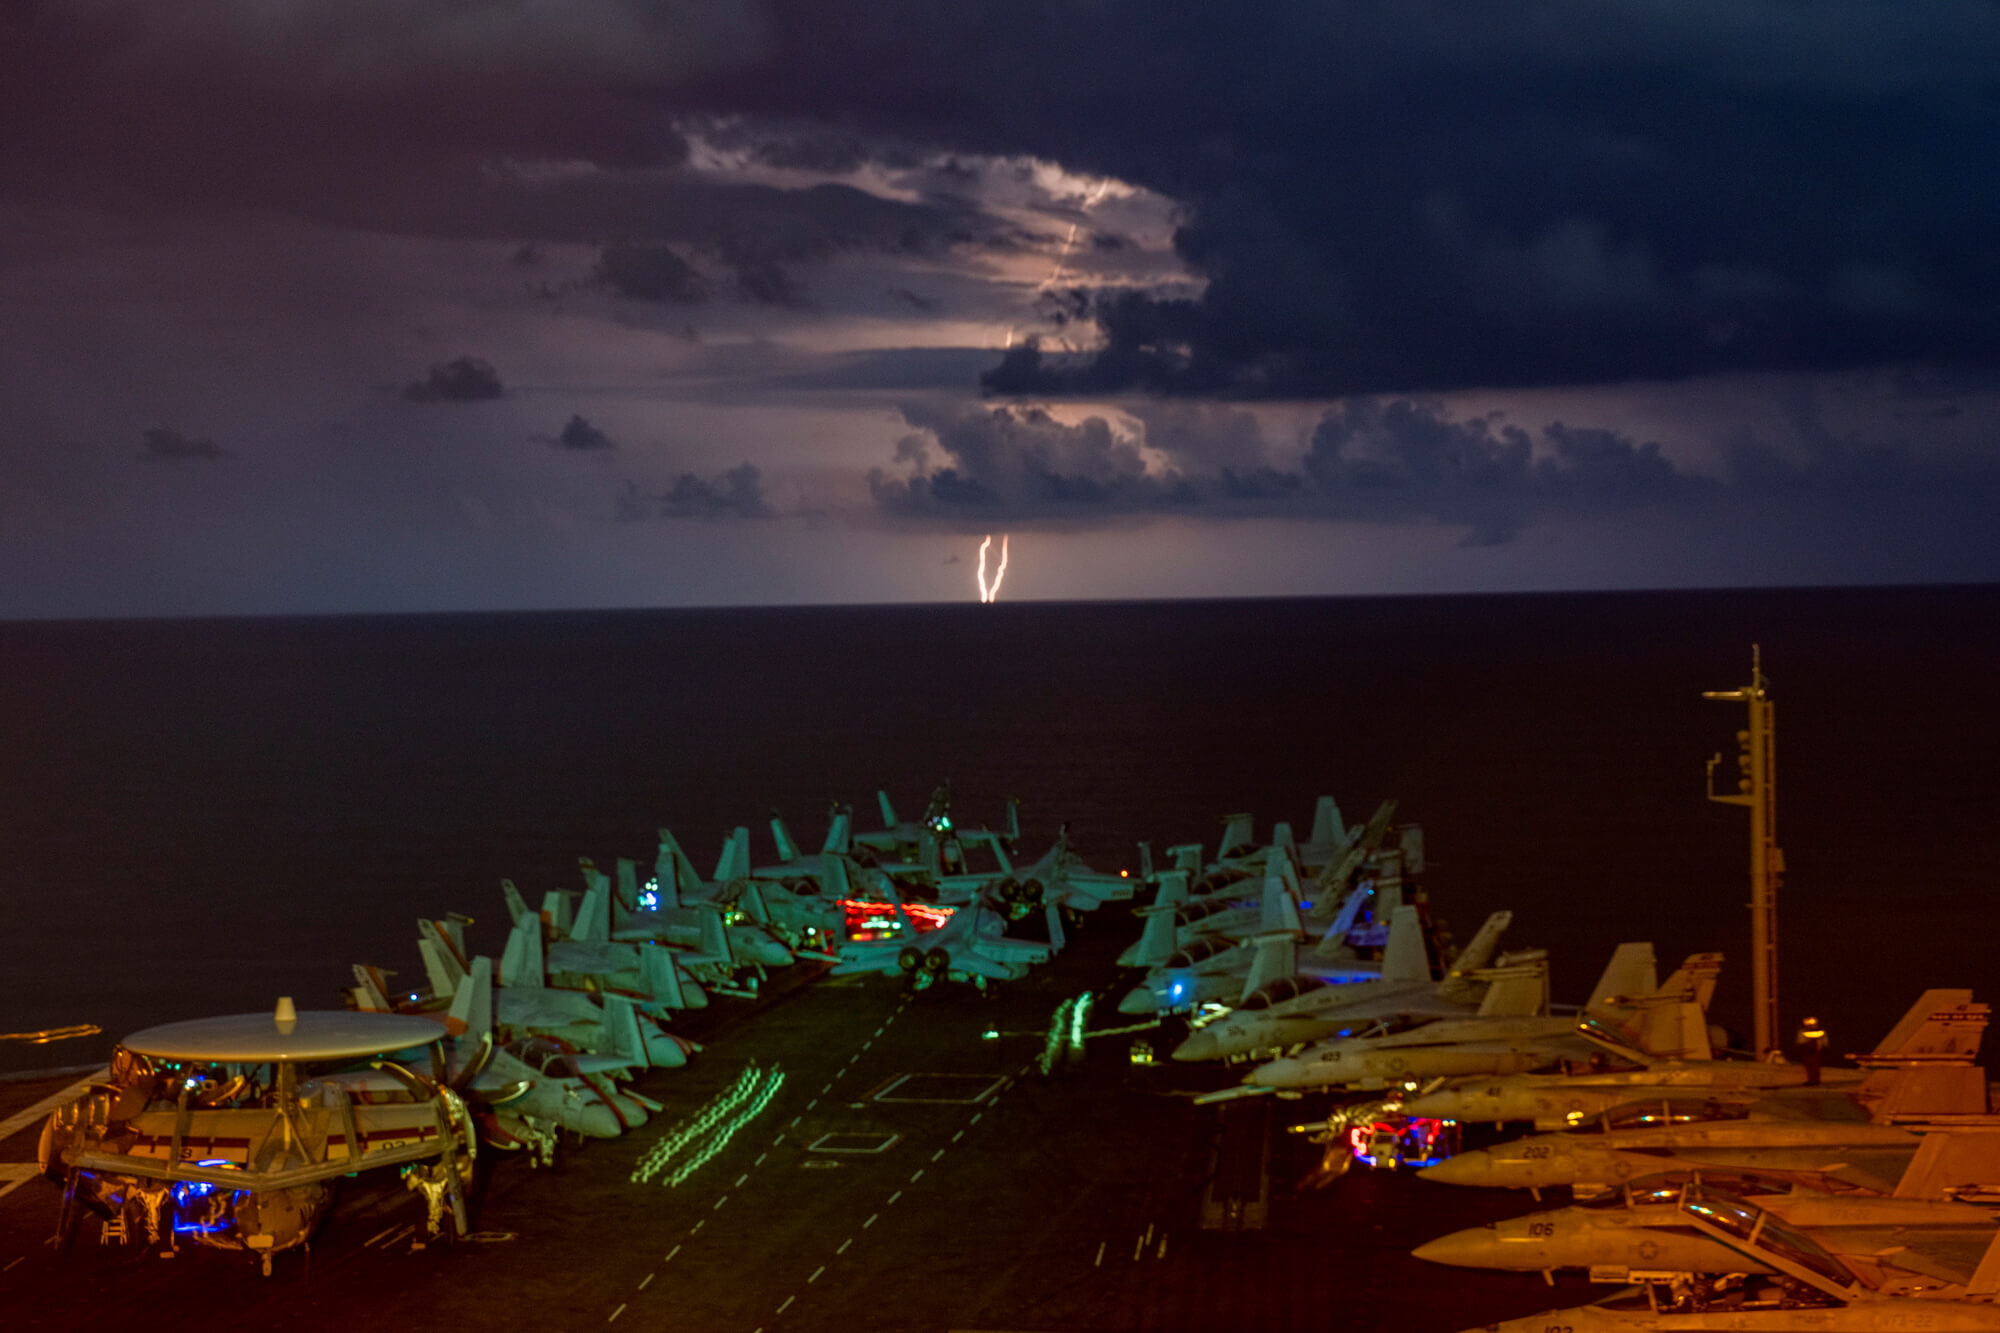  Amerikaans vliegdekschip in de Zuid-Chinese Zee in juli 2020 met onweer op de achtergond. U.S. Navy